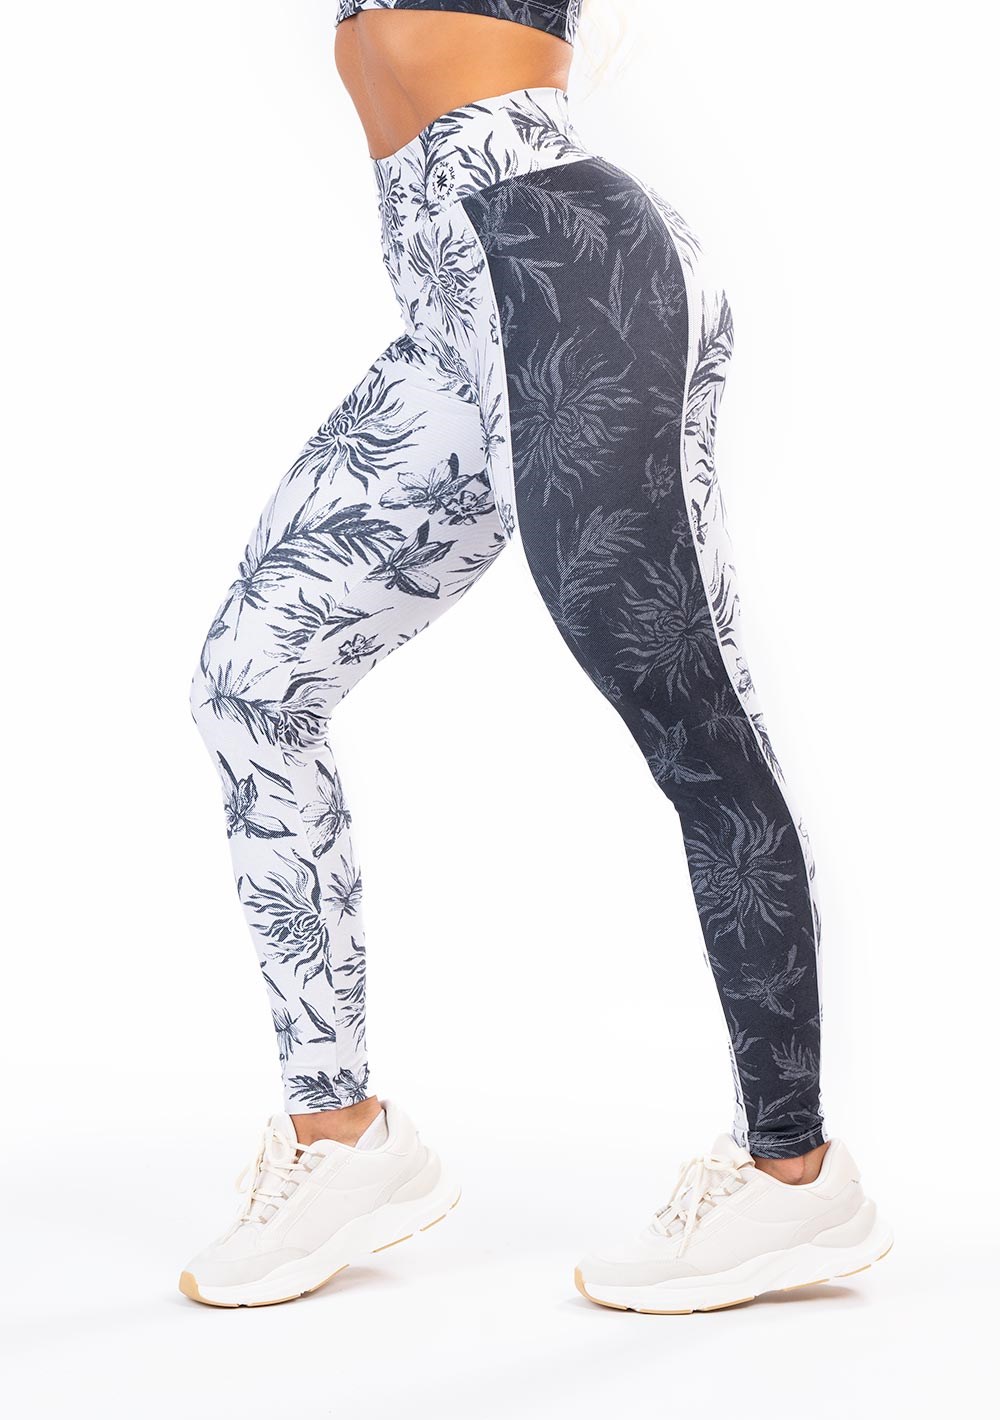 Legging fitness feminina new printed estampada stencil preto e branco